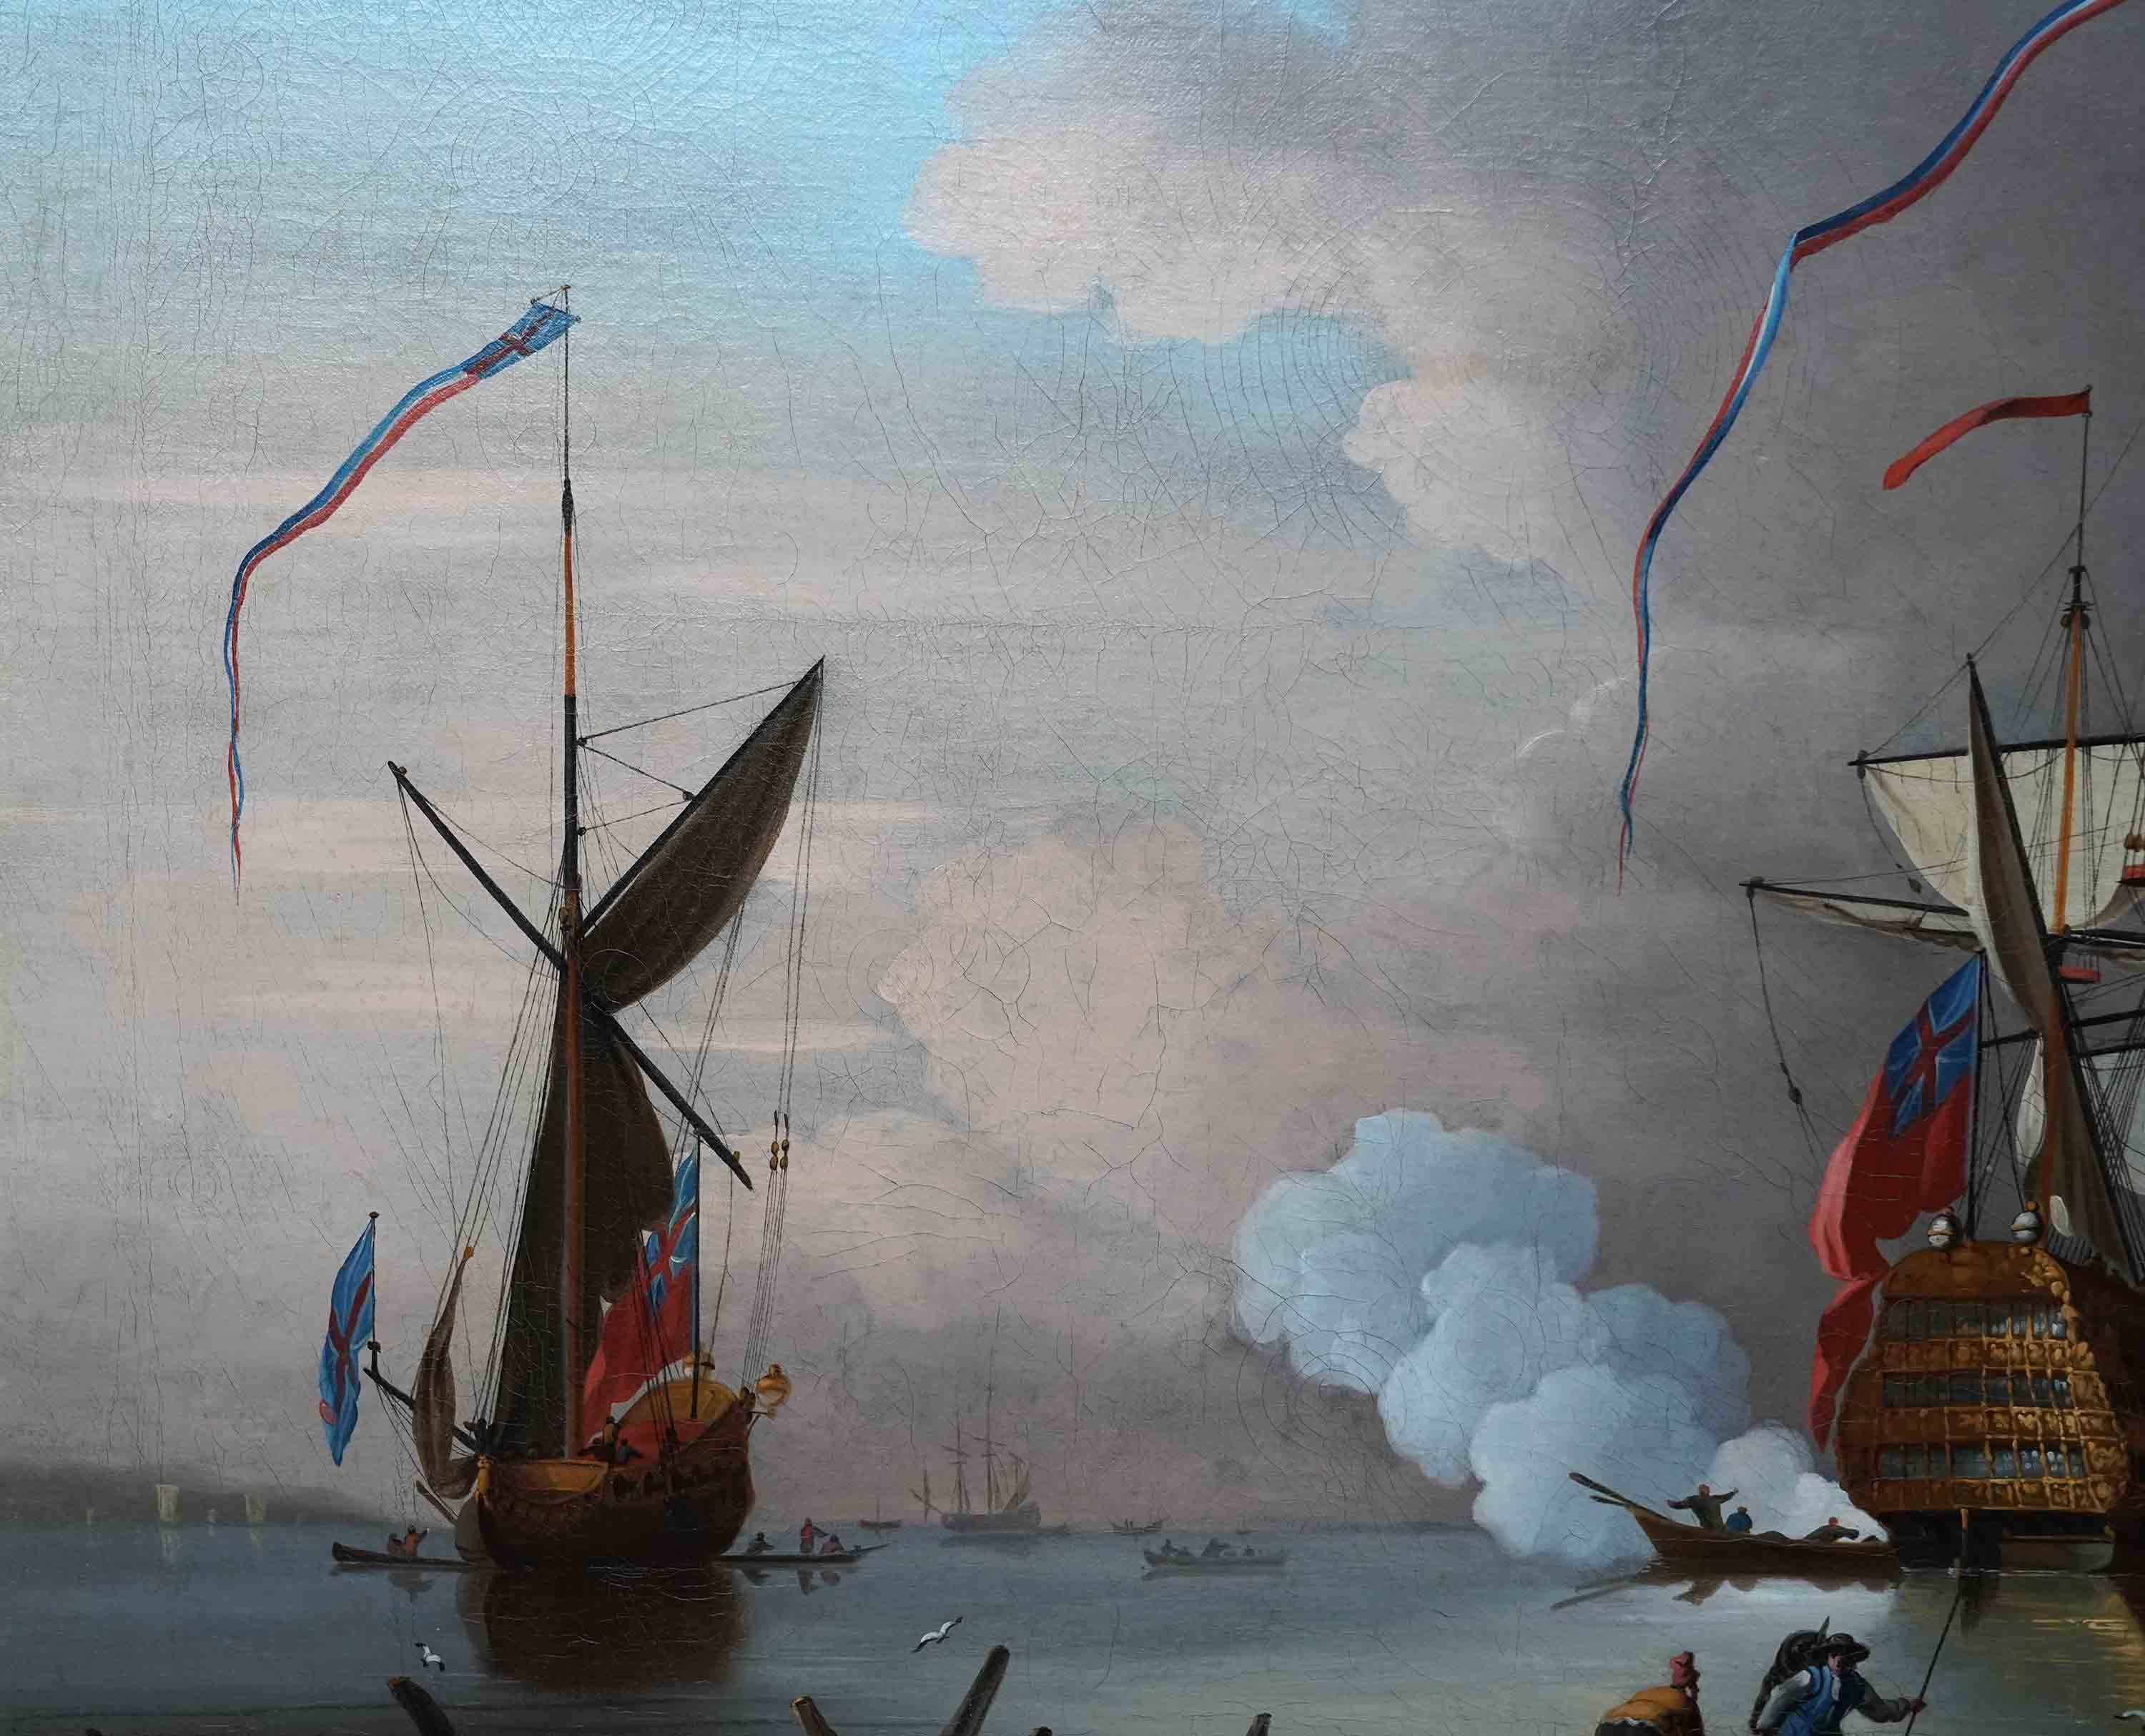 Dieses prächtige britische Altmeister-Ölgemälde der Marine wird zugeschrieben  Peter Monamy. Es wurde um 1730 gemalt und zeigt eine Morgenkanone - eine Morgenkanone ist eine Kanone, die beim ersten Ton des Weckrufs in militärischen Einrichtungen